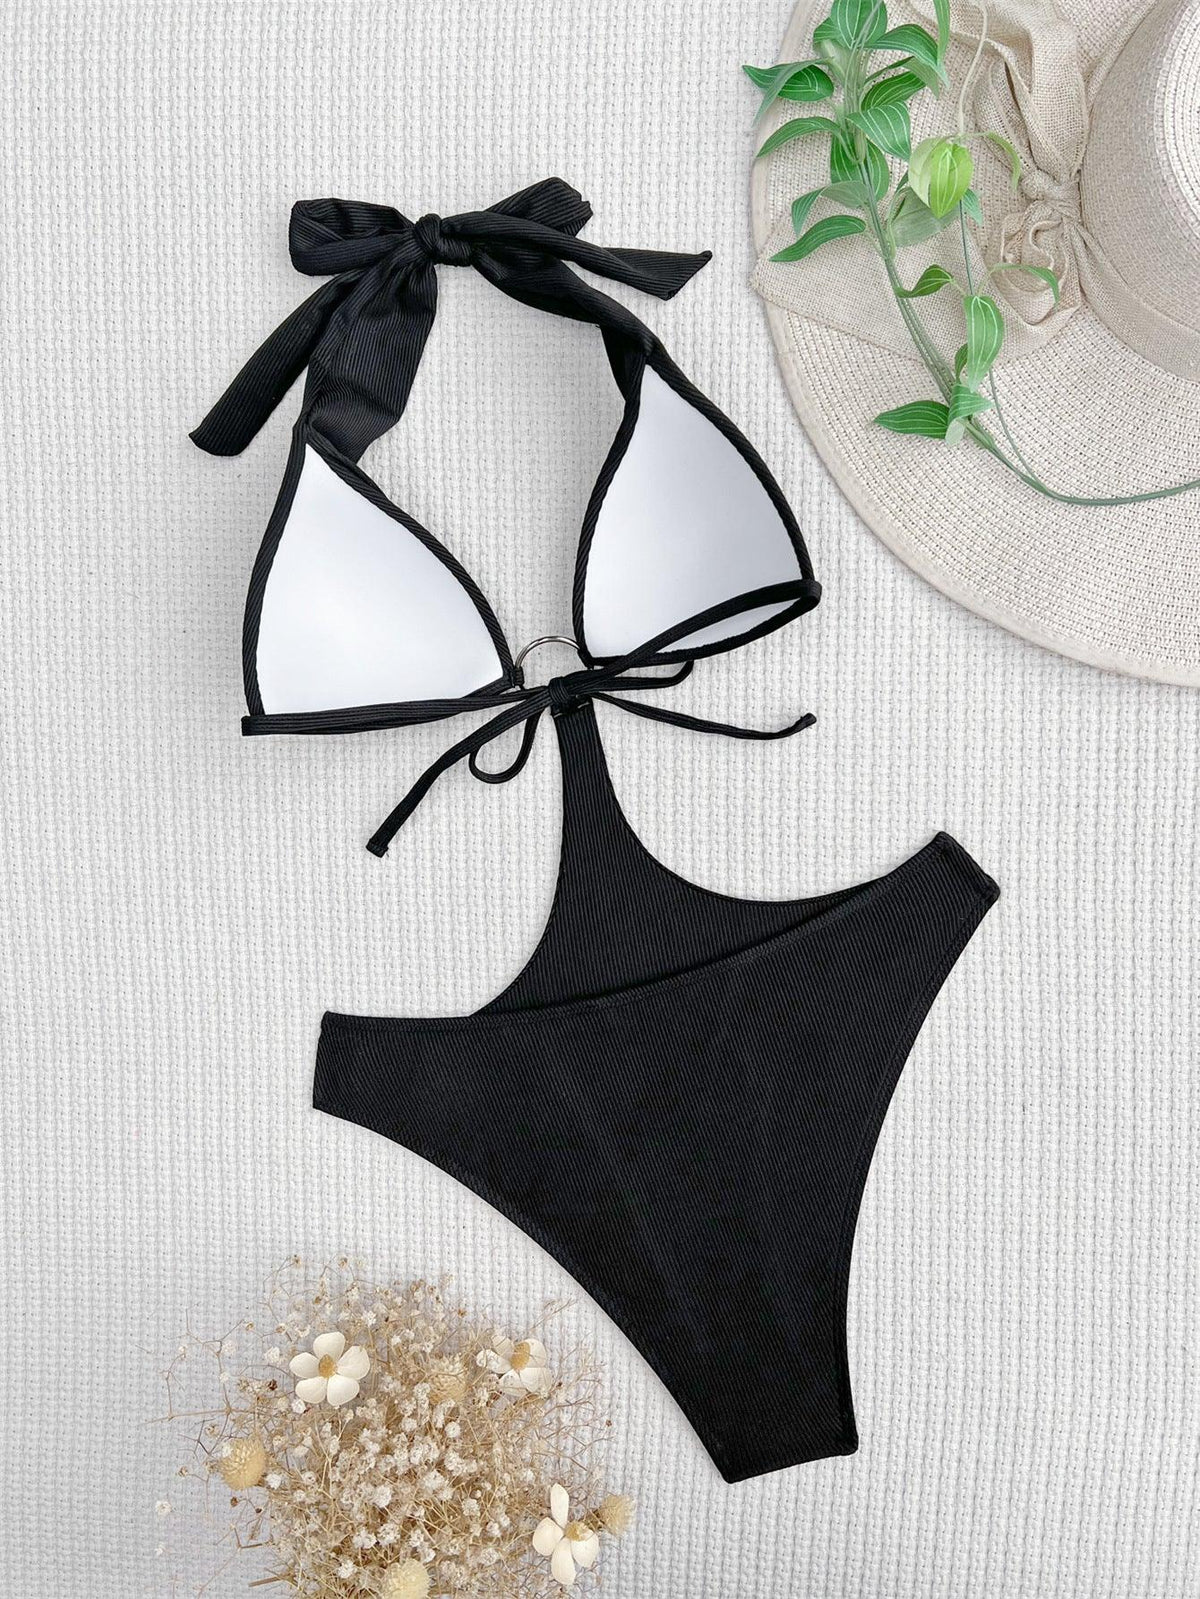 Women's Striped One-Piece Swimsuit - GFIT | Sexy Beachwear | Pool-Ready Swimwear - GFIT SPORTS